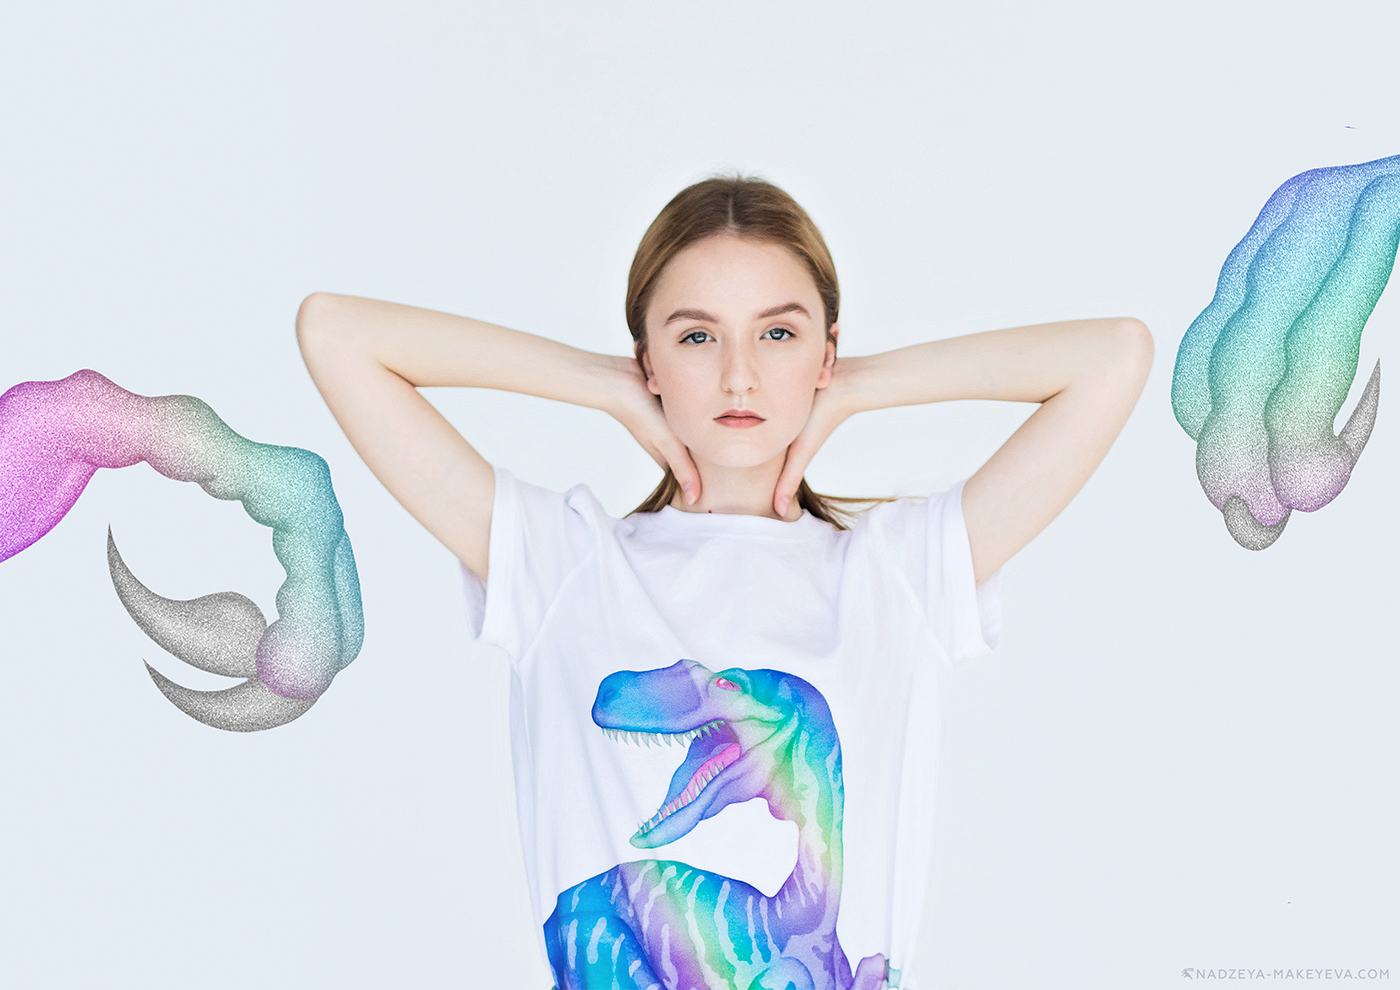 print apparel silkscreen velociraptor shirt t-shirt Dinosaur t-rex holographic